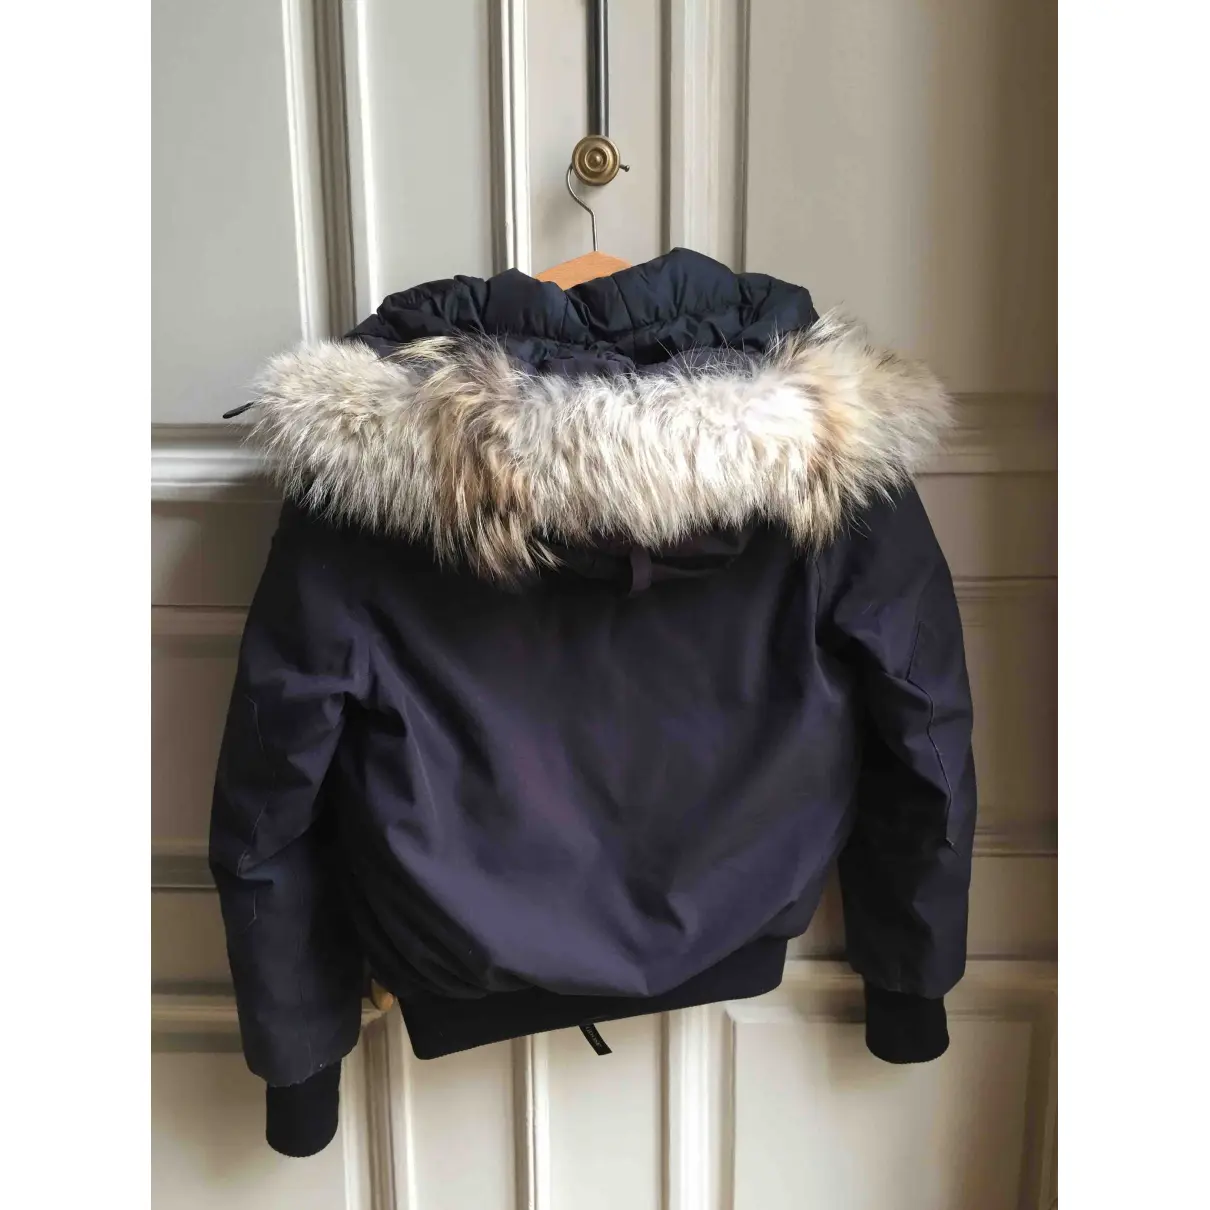 Buy Canada Goose Navy Cotton Jacket & coat Chilliwack online